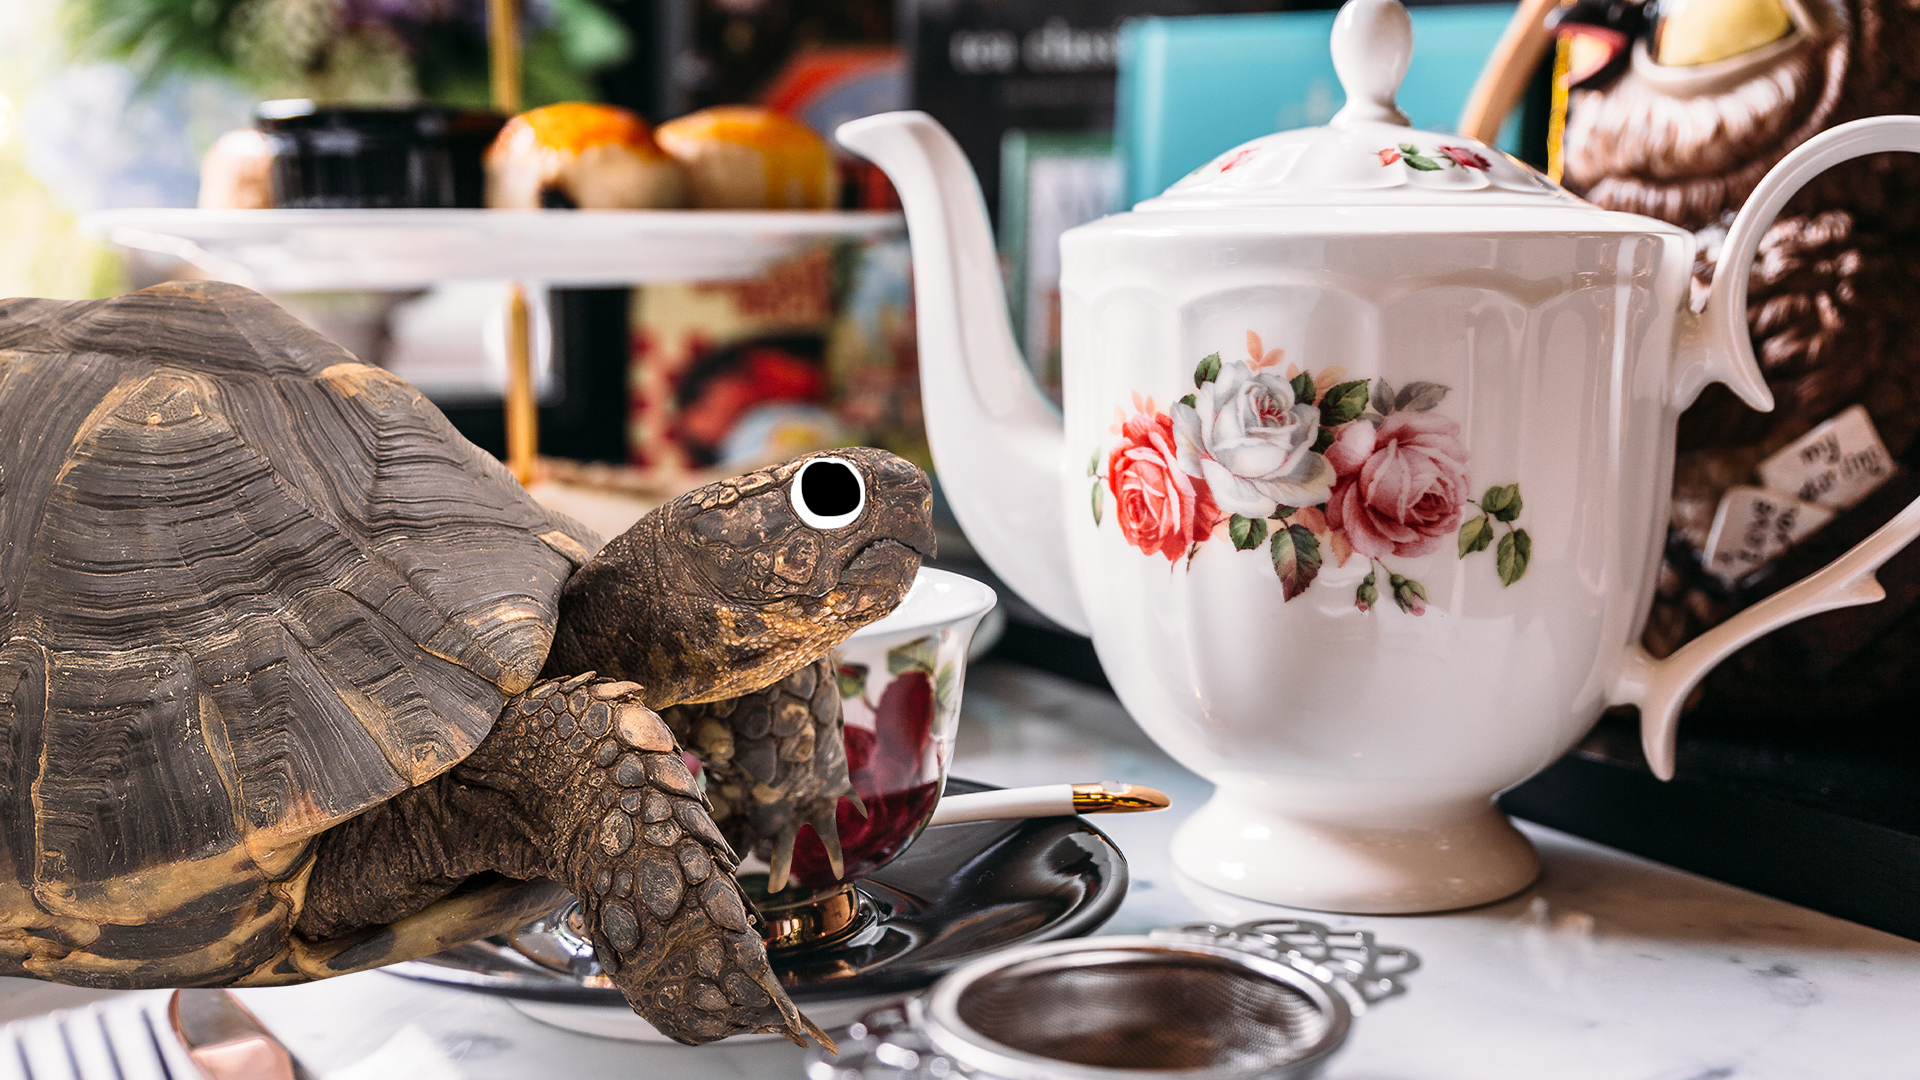 A tortoise and a teacup